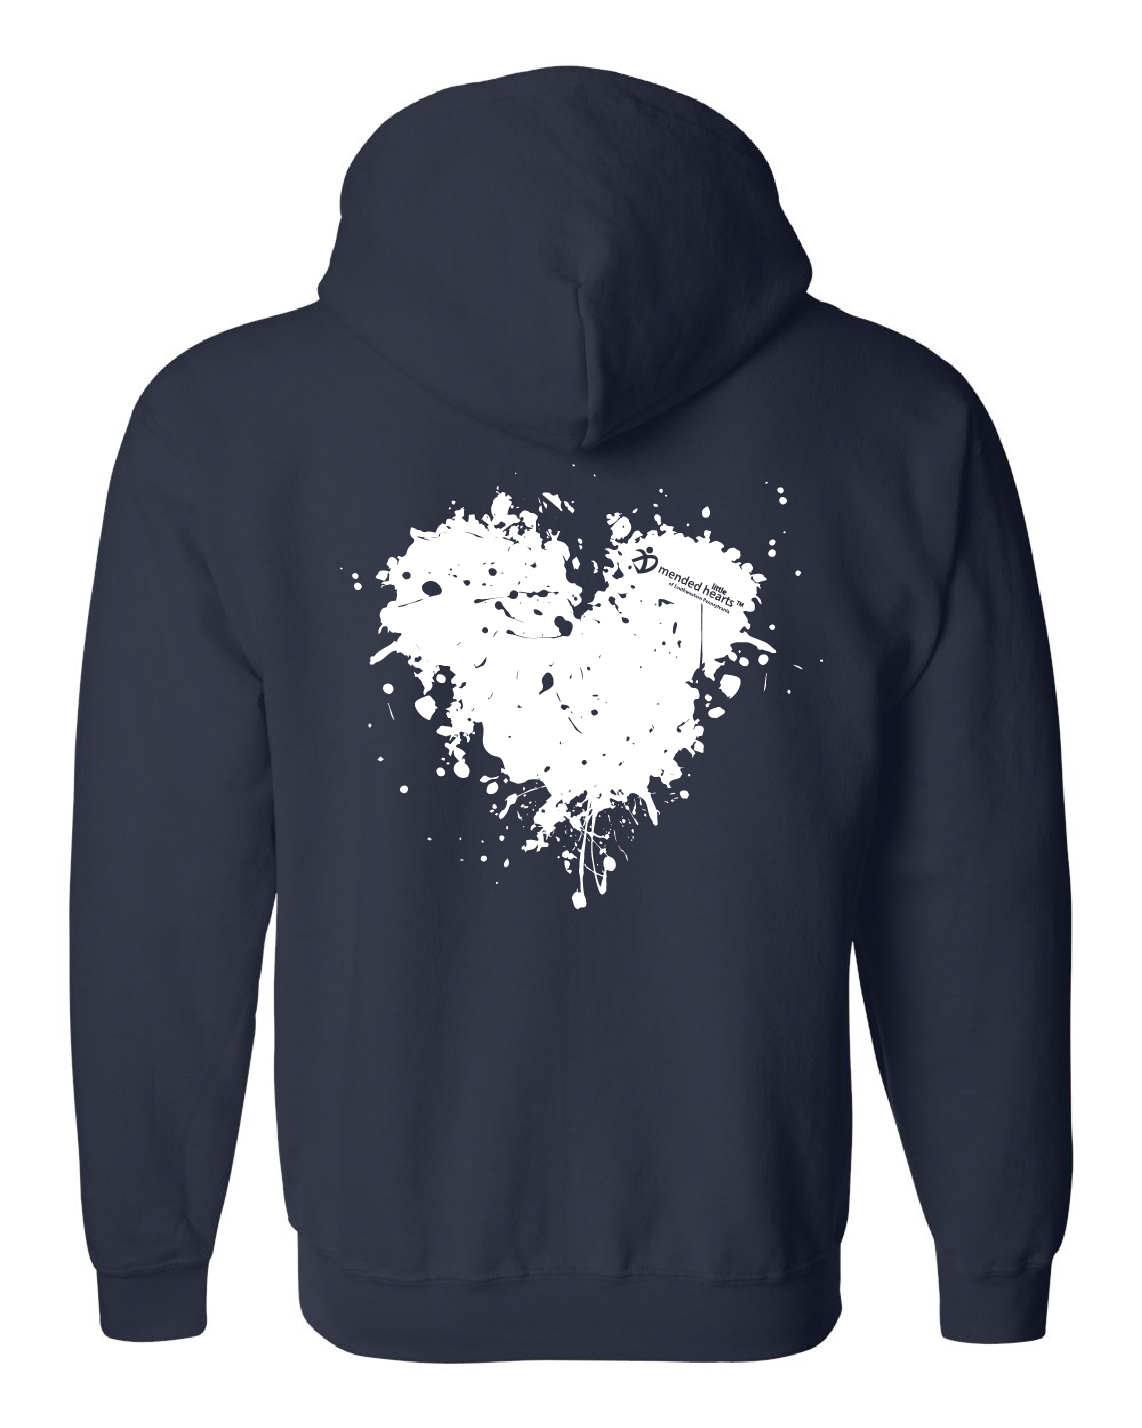 Splatter Heart Zip-Up Hooded Sweatshirt Available in Navy or Dark Heather